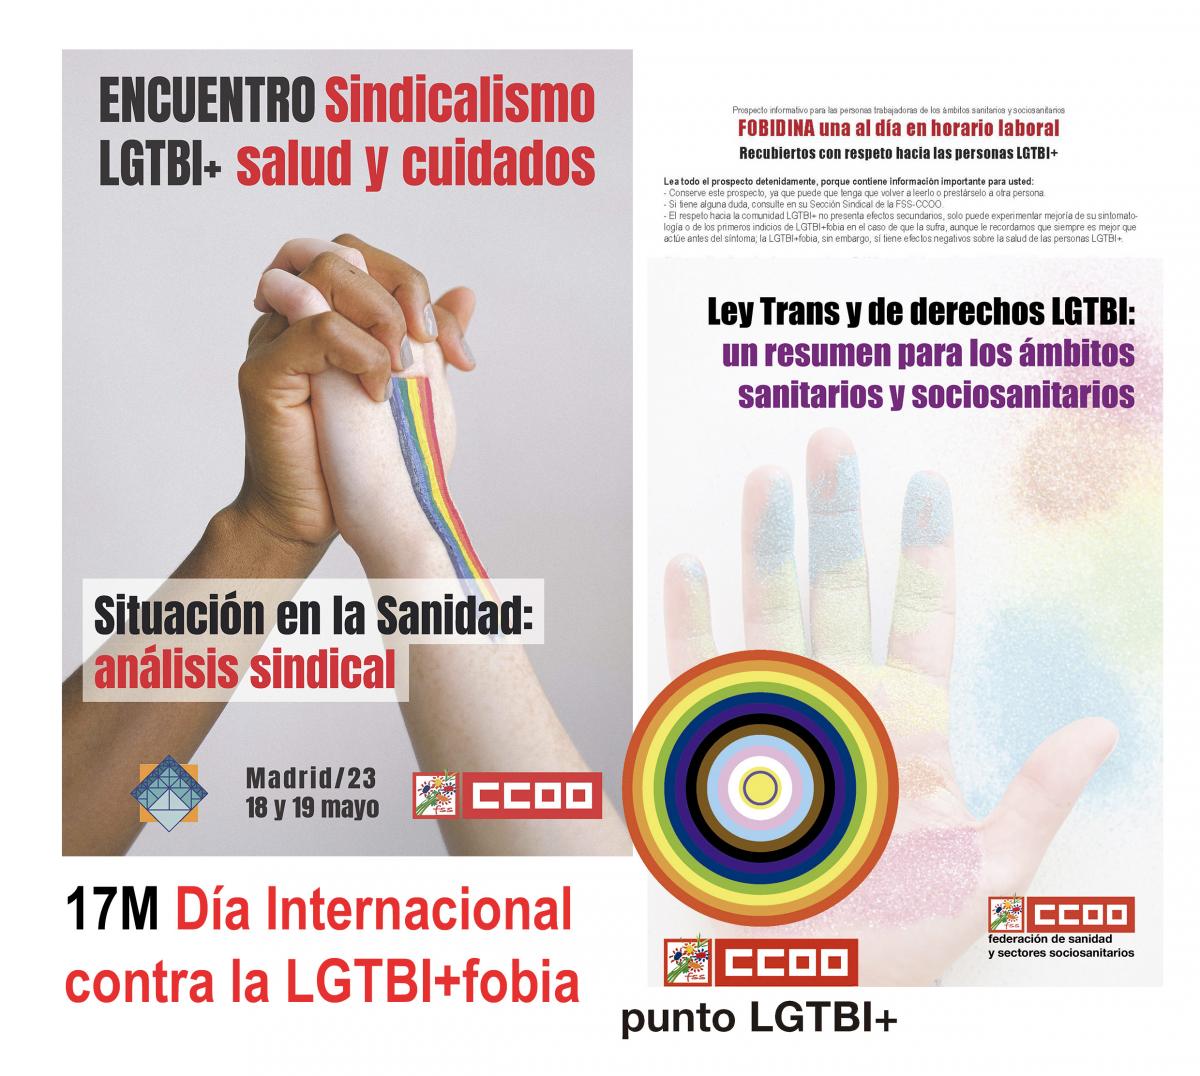 La FSS-CCOO fortalece sus compromisos sindicales en la lucha contra la LGTBI+fobia en los entornos laborales sanitarios y sociosanitarios